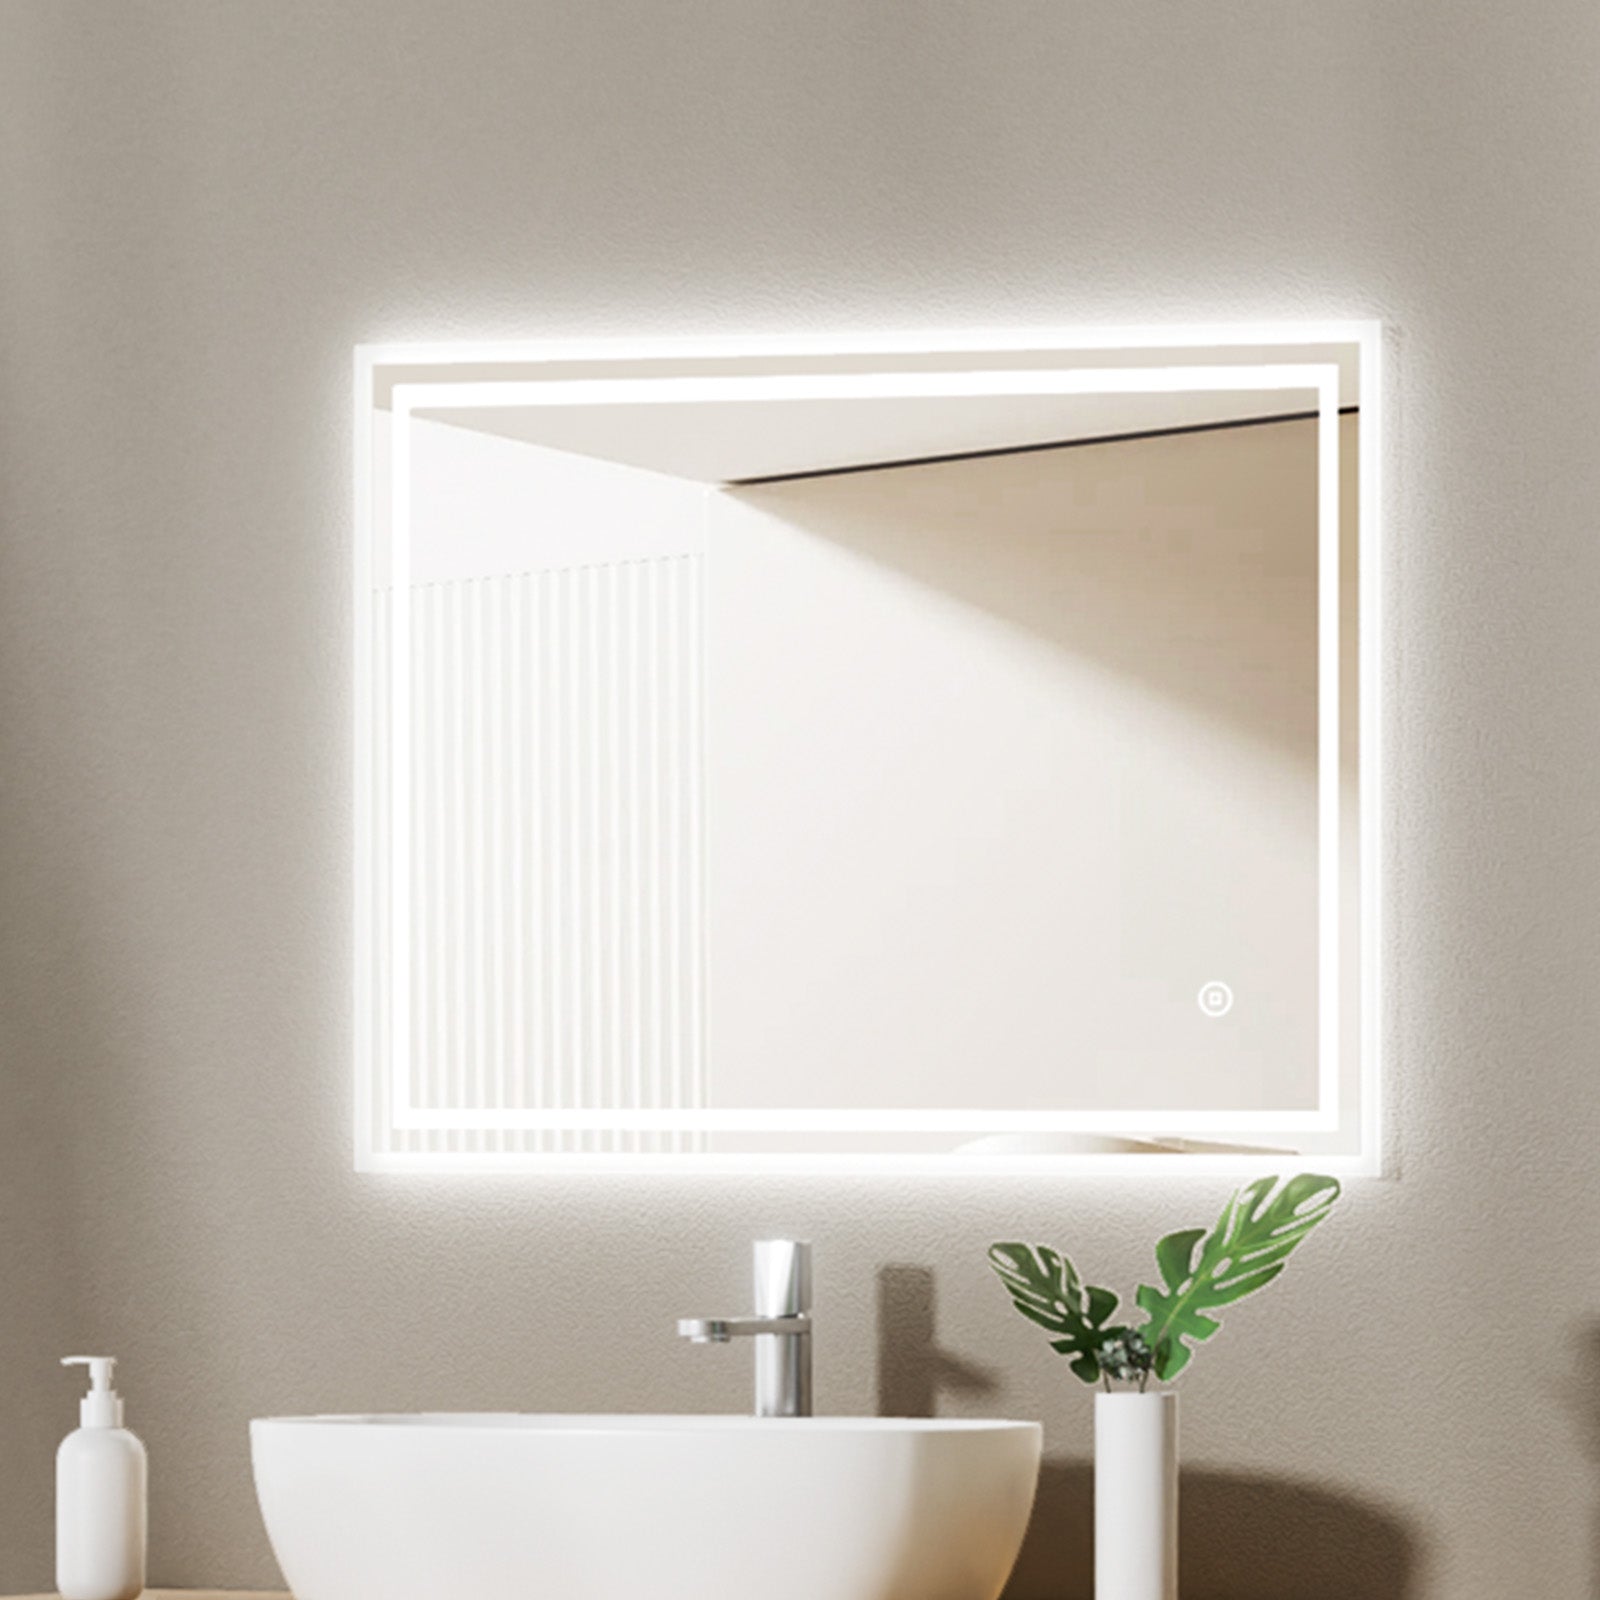 EMKE Badspiegel mit Beleuchtung „LeeMi Ω Pro“ 60x80cm Touch Schalter, 3 Lichtfarben, Antibeschlag